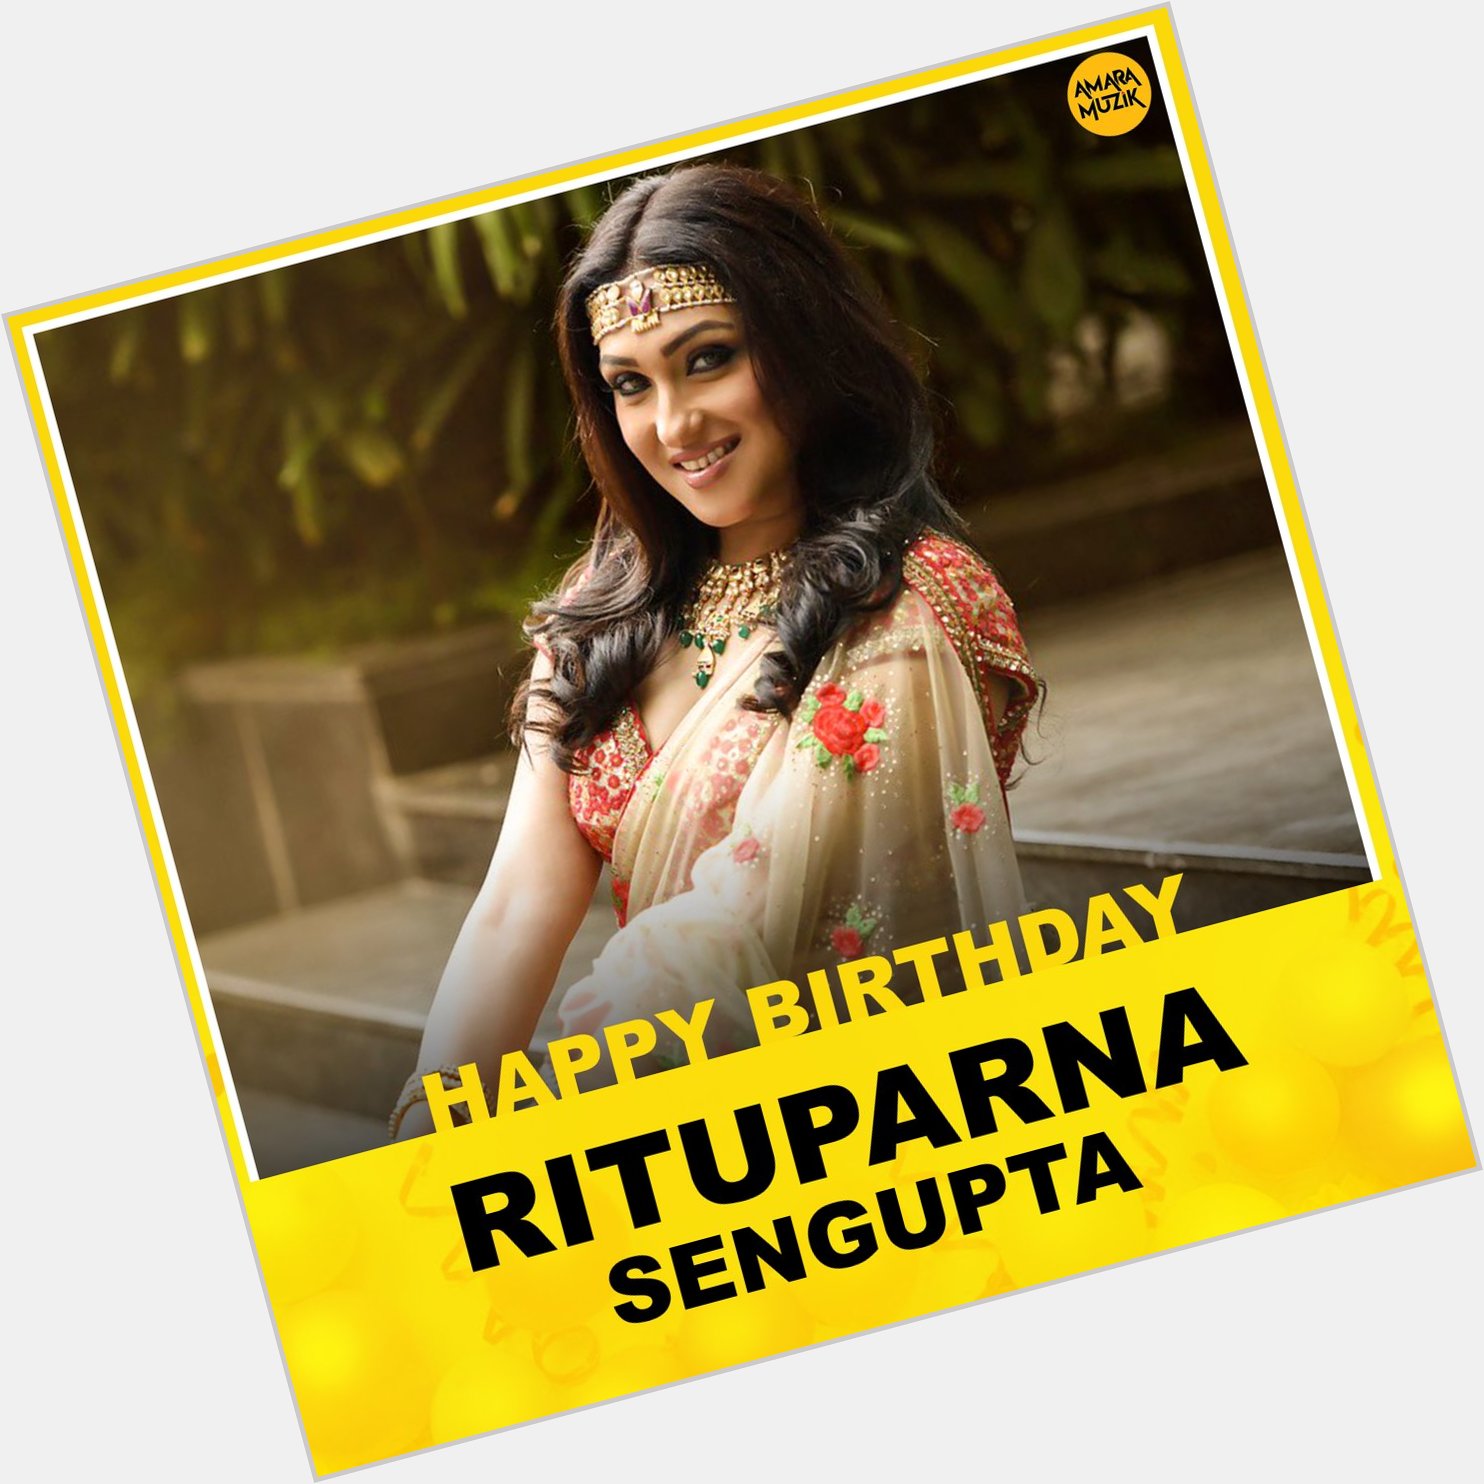 Team Amara Muzik Bengali Wishes Actor Rituparna Sengupta a Very Happy Birthday.. 